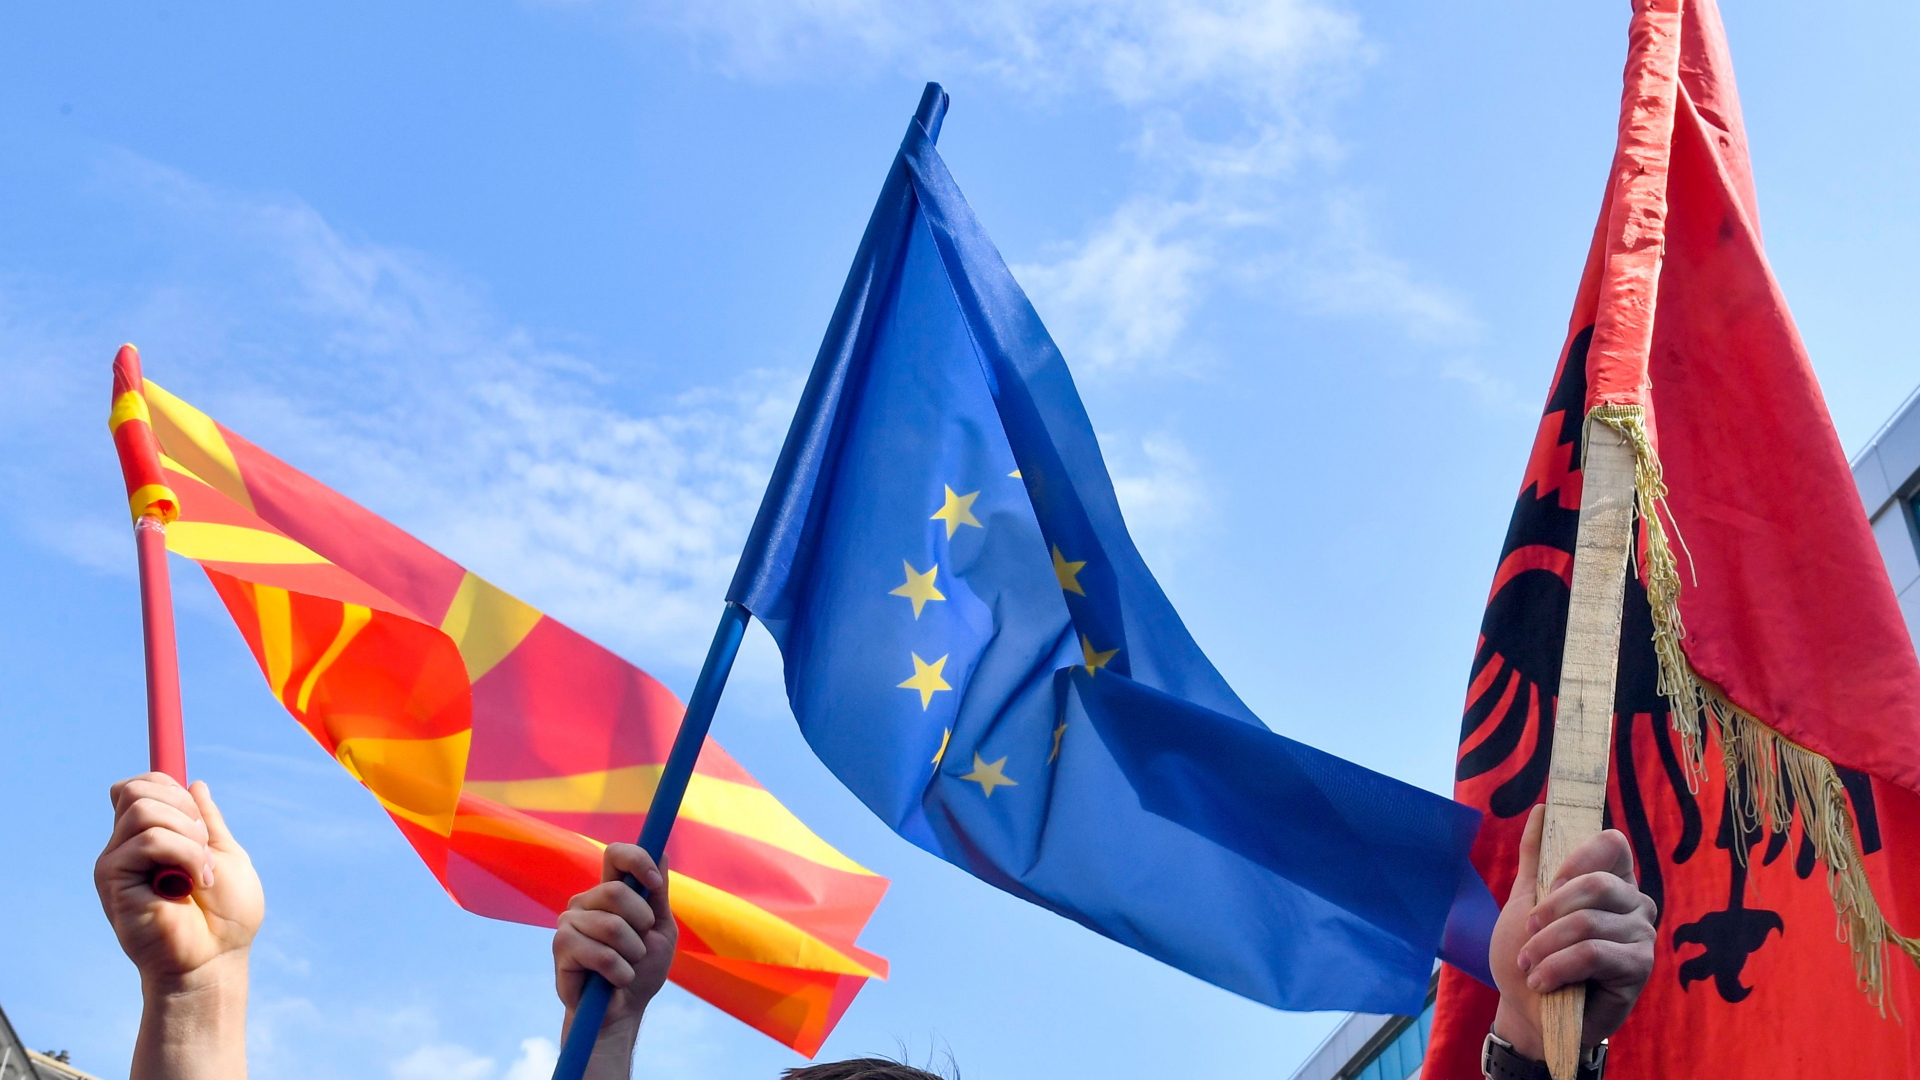 Auf einer Kundgebung in Skopje werden die EU-Flagge sowie die Flaggen von Nordmazedonien und Albanien geschwenkt. | GEORGI LICOVSKI/EPA-EFE/REX